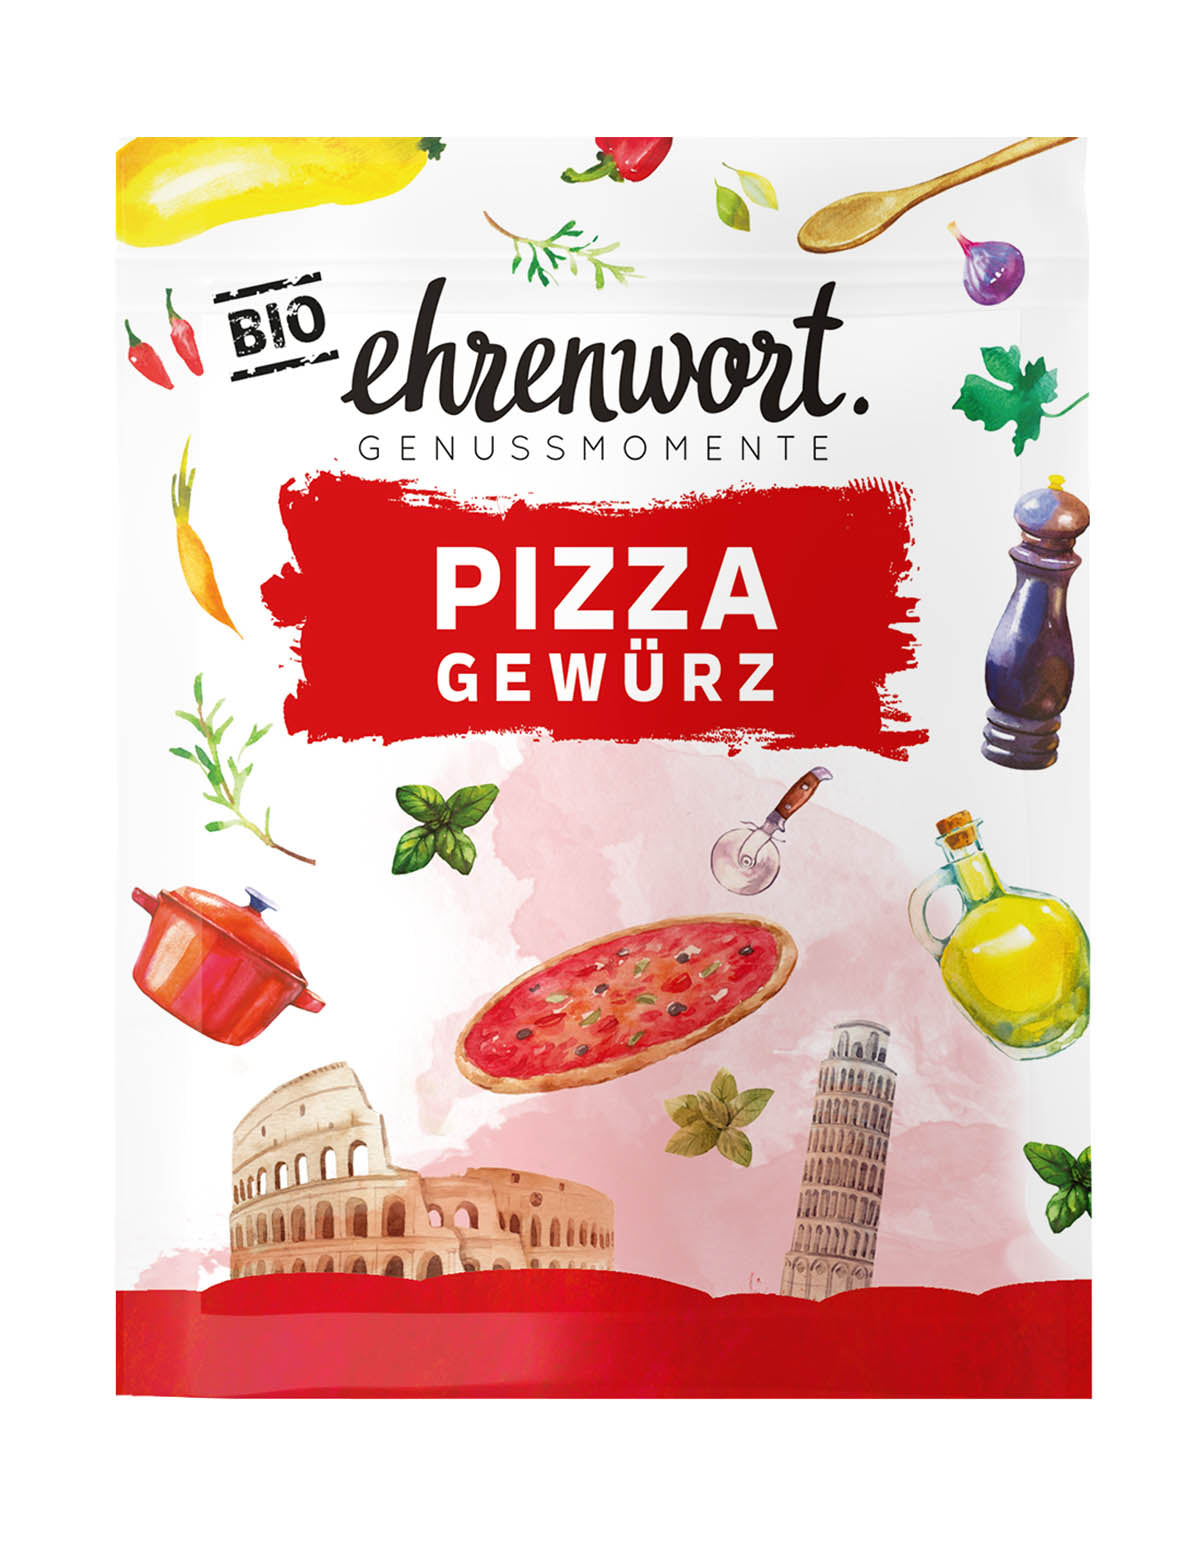 Ehrenwort Pizza Gewürz Briefchen Produktabbildung